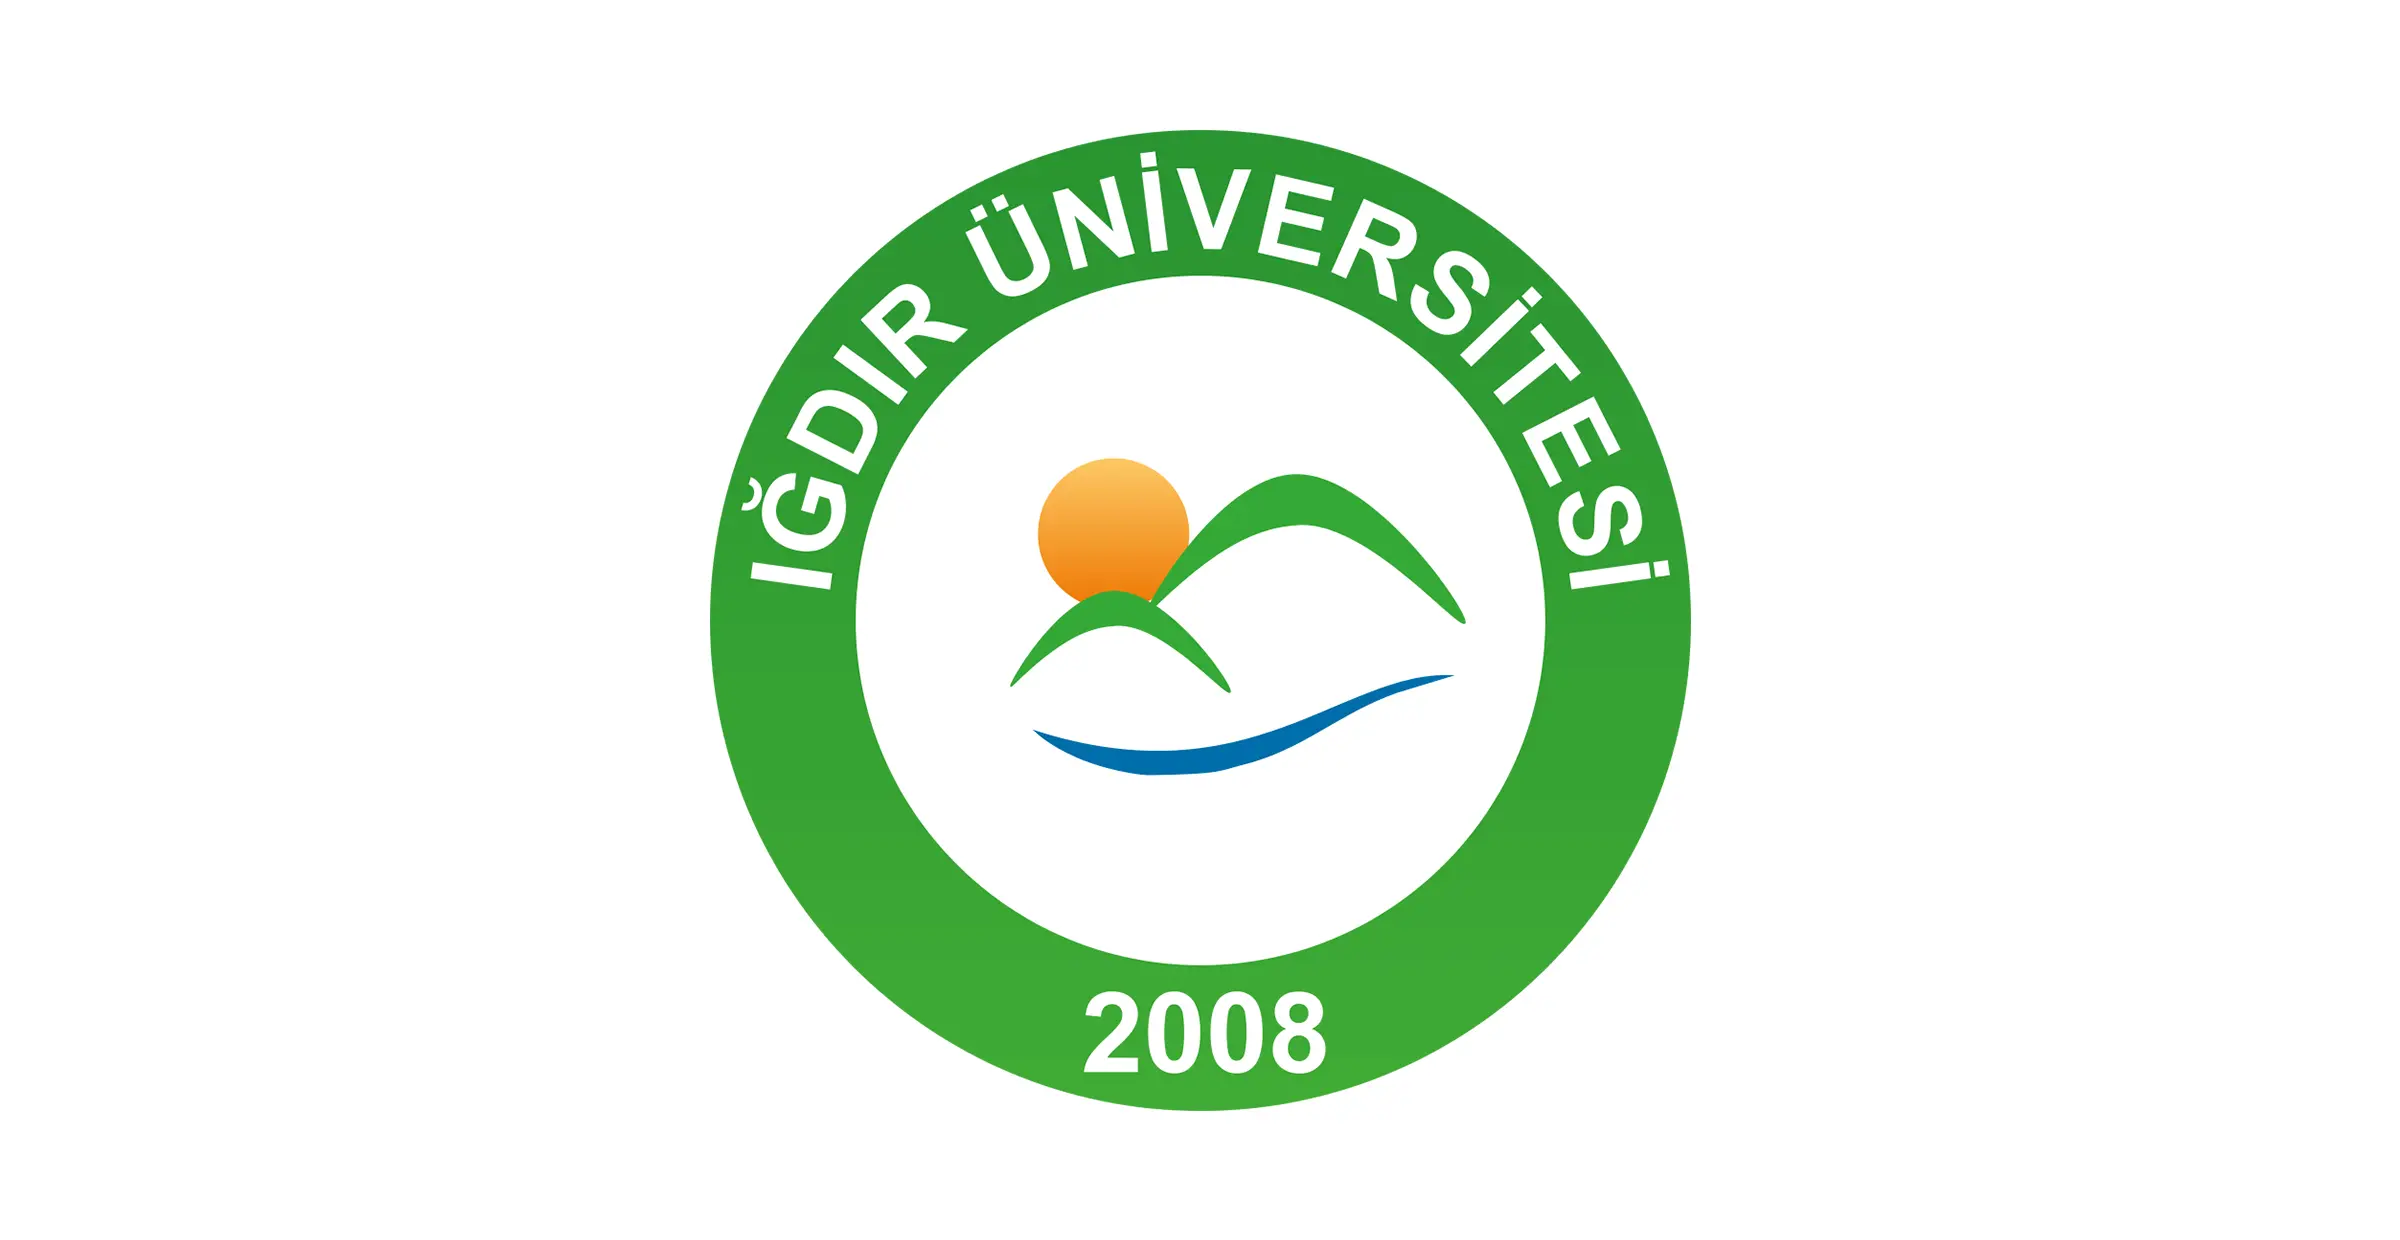 تأسست جامعة اغدير Iğdır Üniversitesi عام 2008. مع 3 كليات و2 معاهد مهنية و 3 معاهد علمية عالية. ويوجد اليوم 9 كليات و 2 كليات تطبيقية